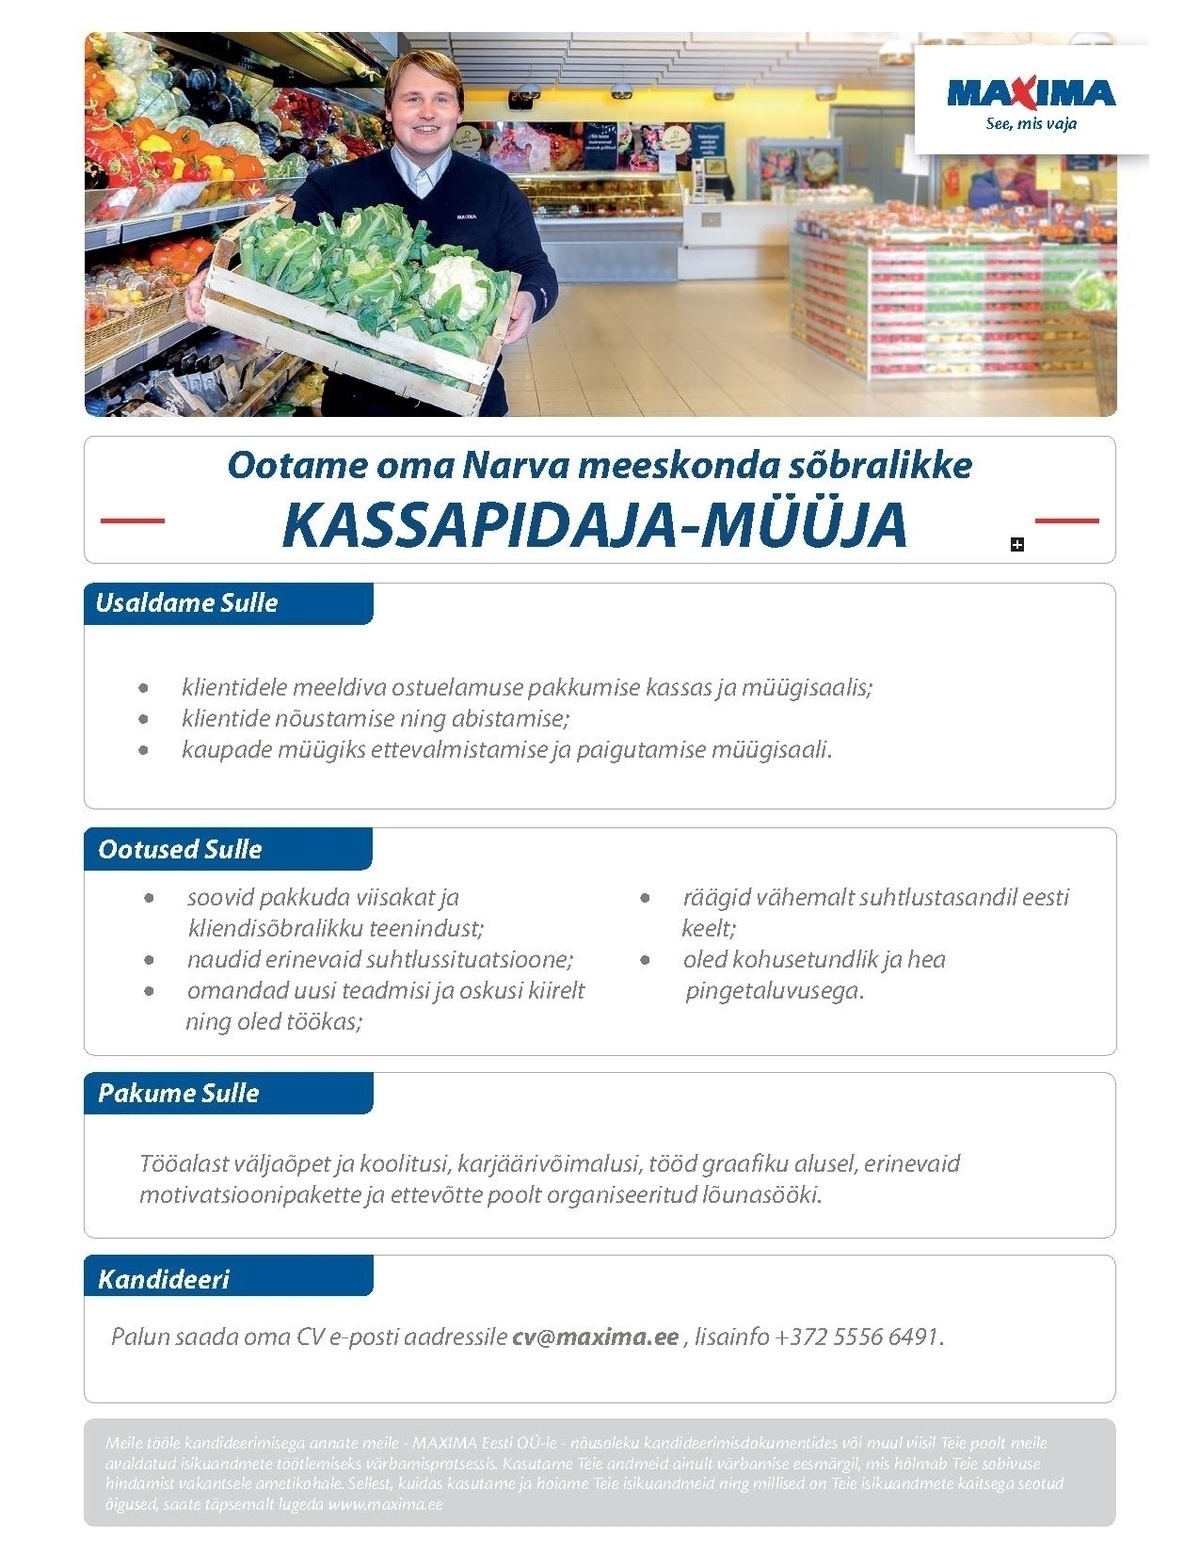 Maxima Eesti OÜ Kassapidaja-müüja Narva Maximas